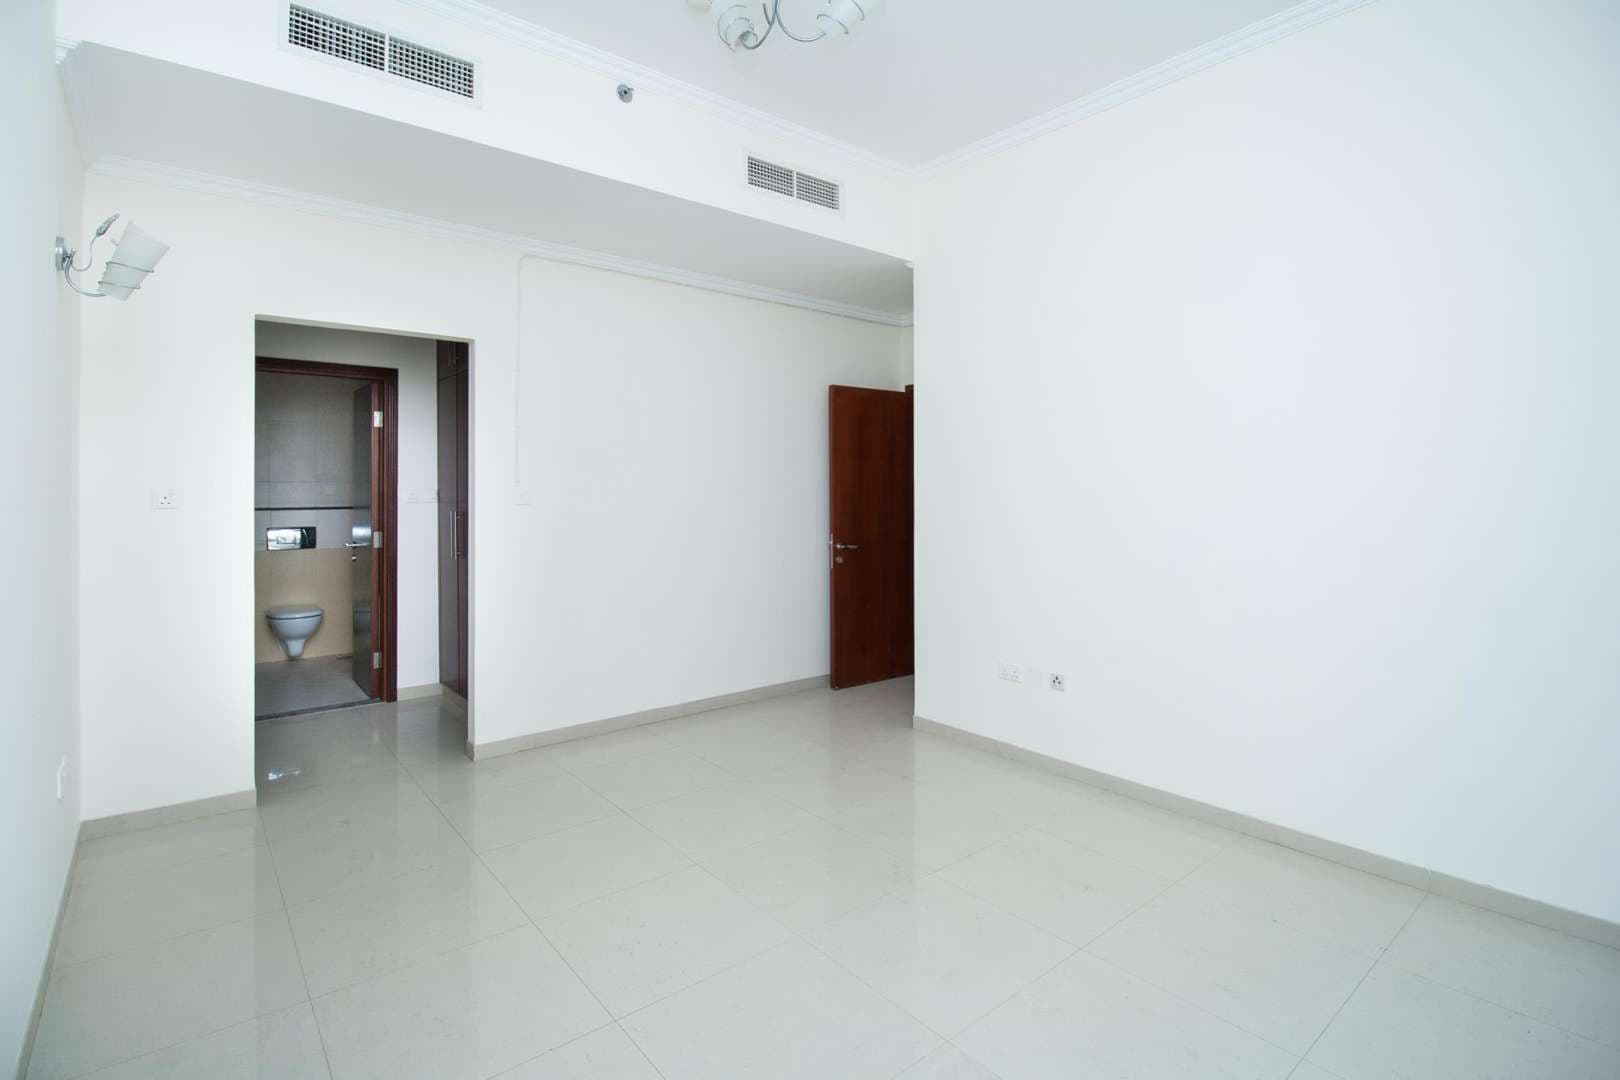 3 Bedroom Apartment For Rent The Zen Tower Lp05443 2e777808eef20800.jpg